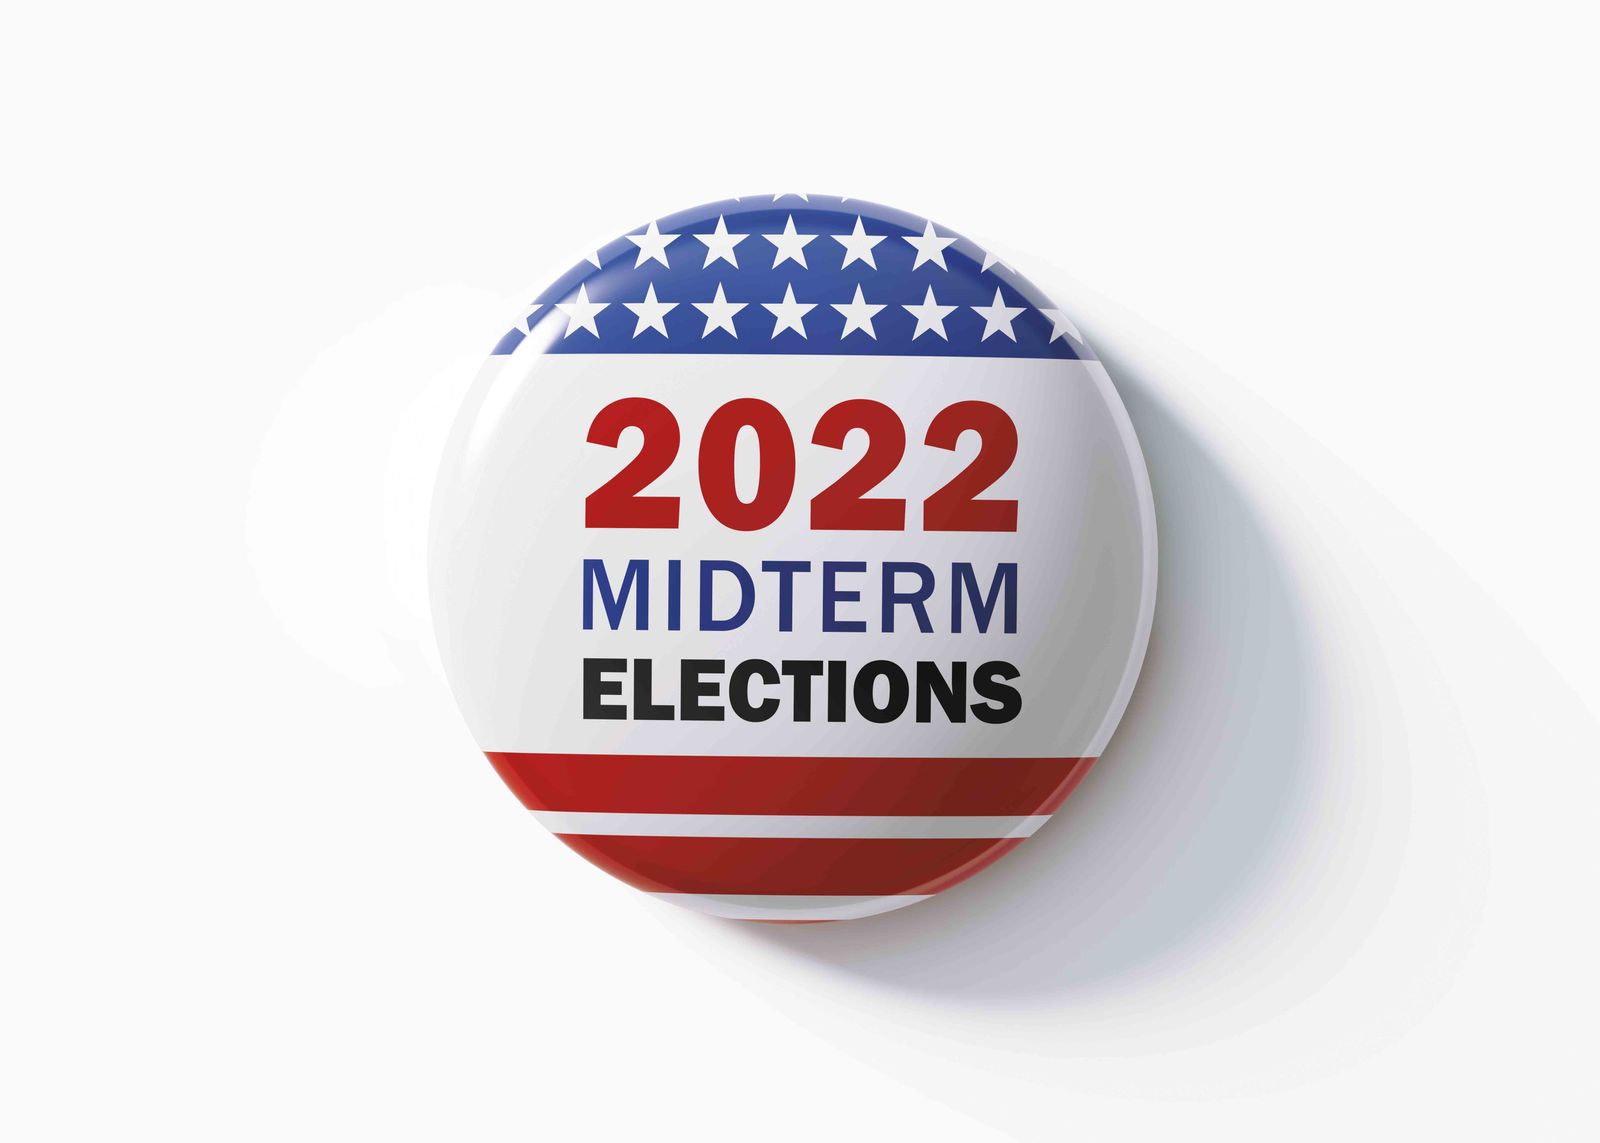 ĐỒ HỌA THÔNG TIN: 18 tiểu bang đã thay đổi quy định về bỏ phiếu qua thư cho năm 2022